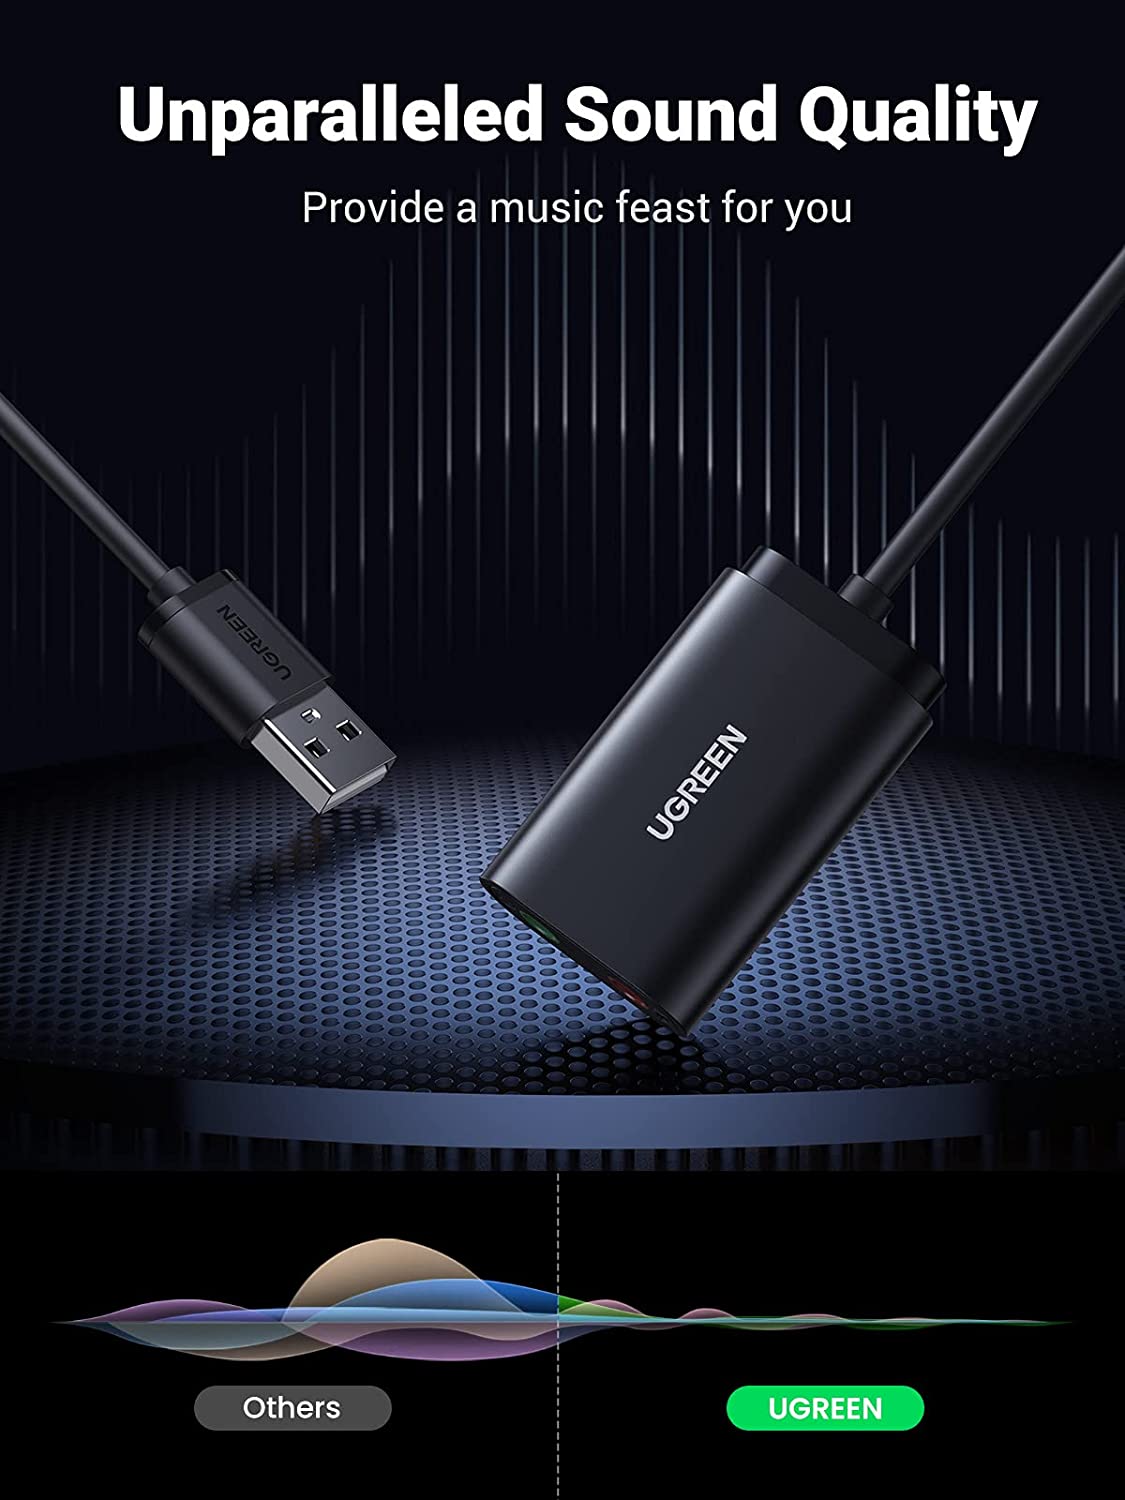 30724 Звуковая карта внешня UGREEN US205, USB to 2 AUX 3.5mm (микрофонный вход + аудиовыход), с проводом 15cm, цвет: черный